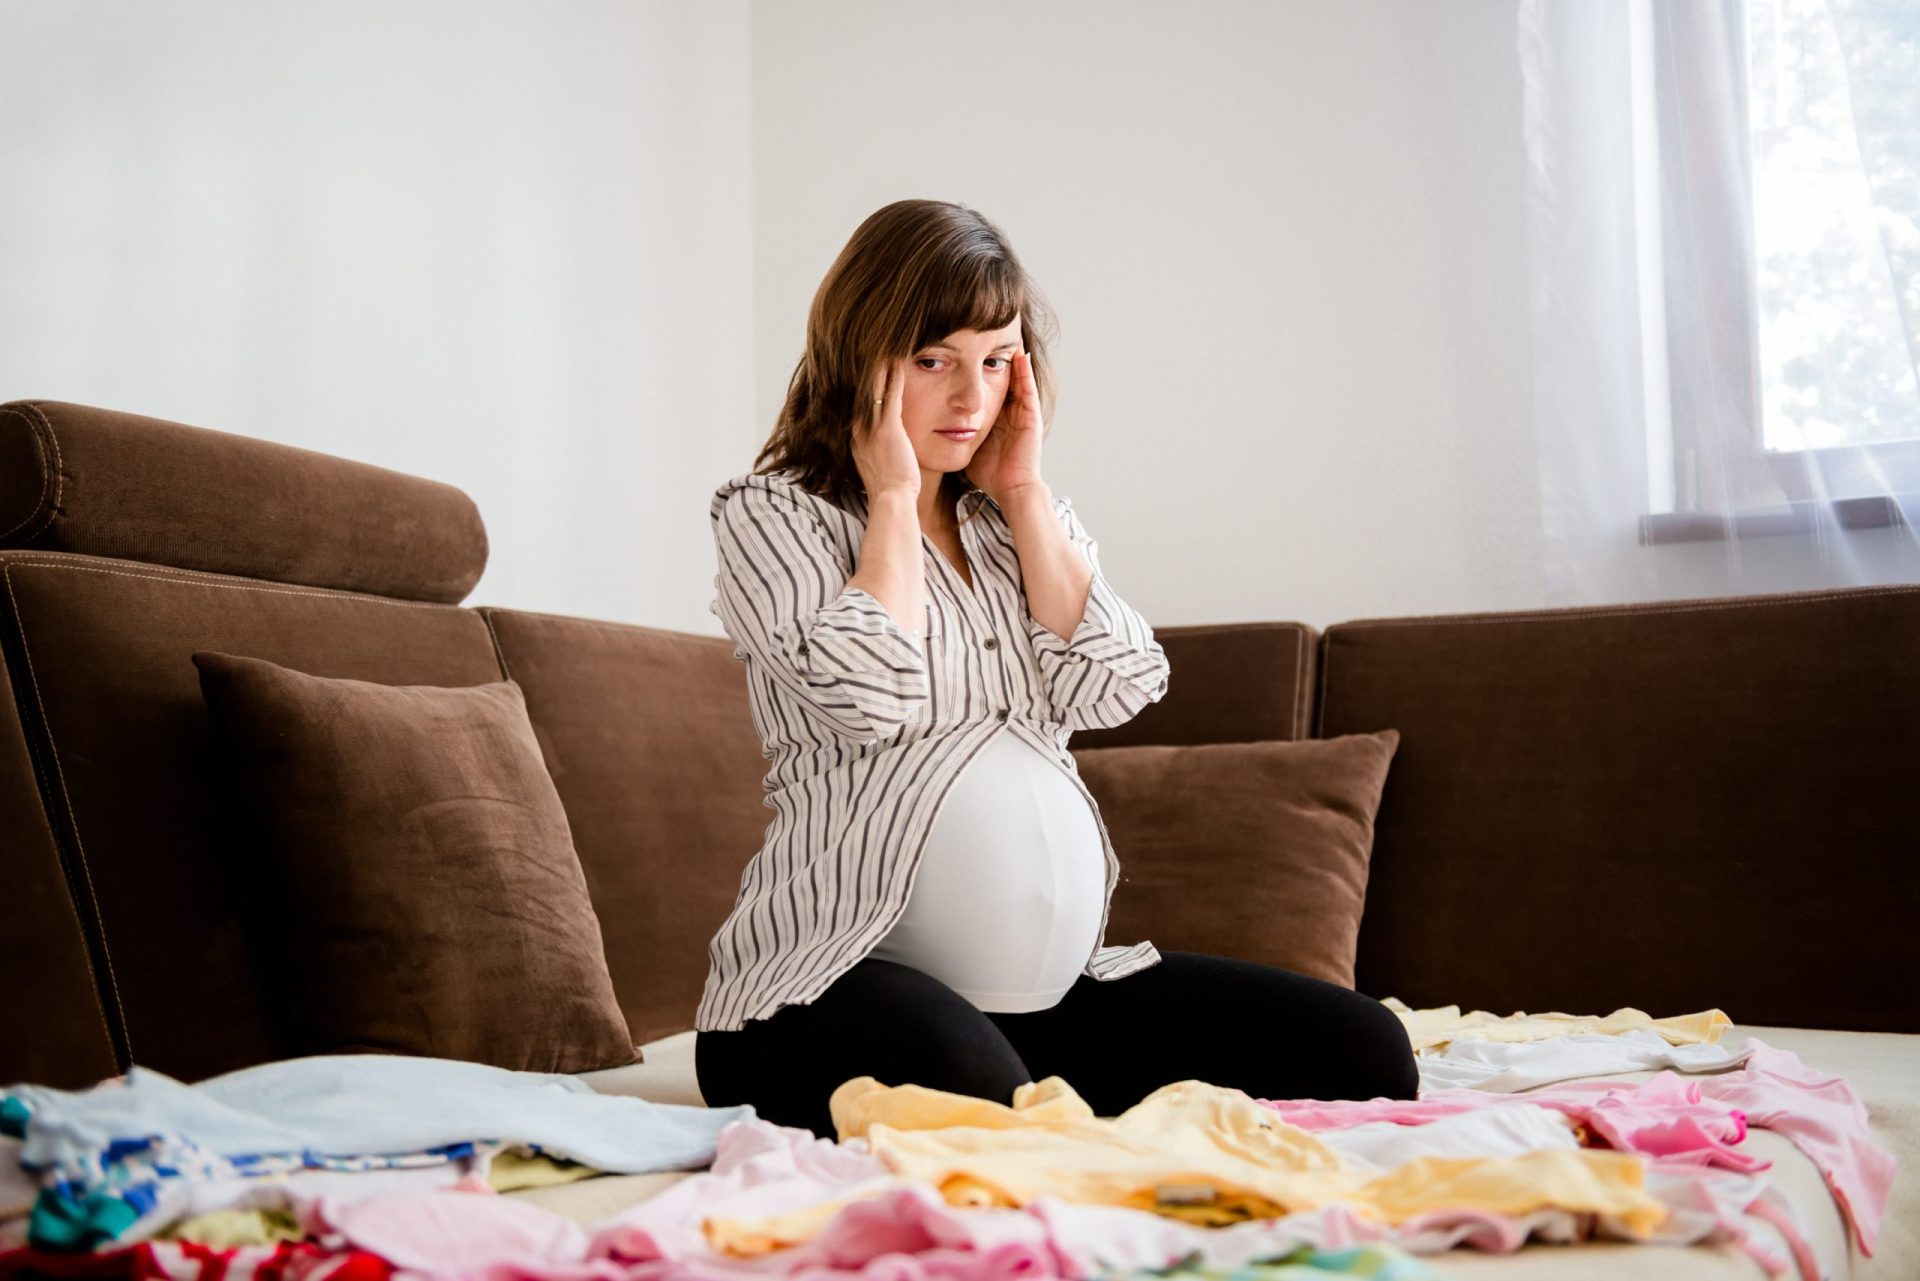 Portugal recebe 200 mil euros para tratar depressões na gravidez e pós-parto